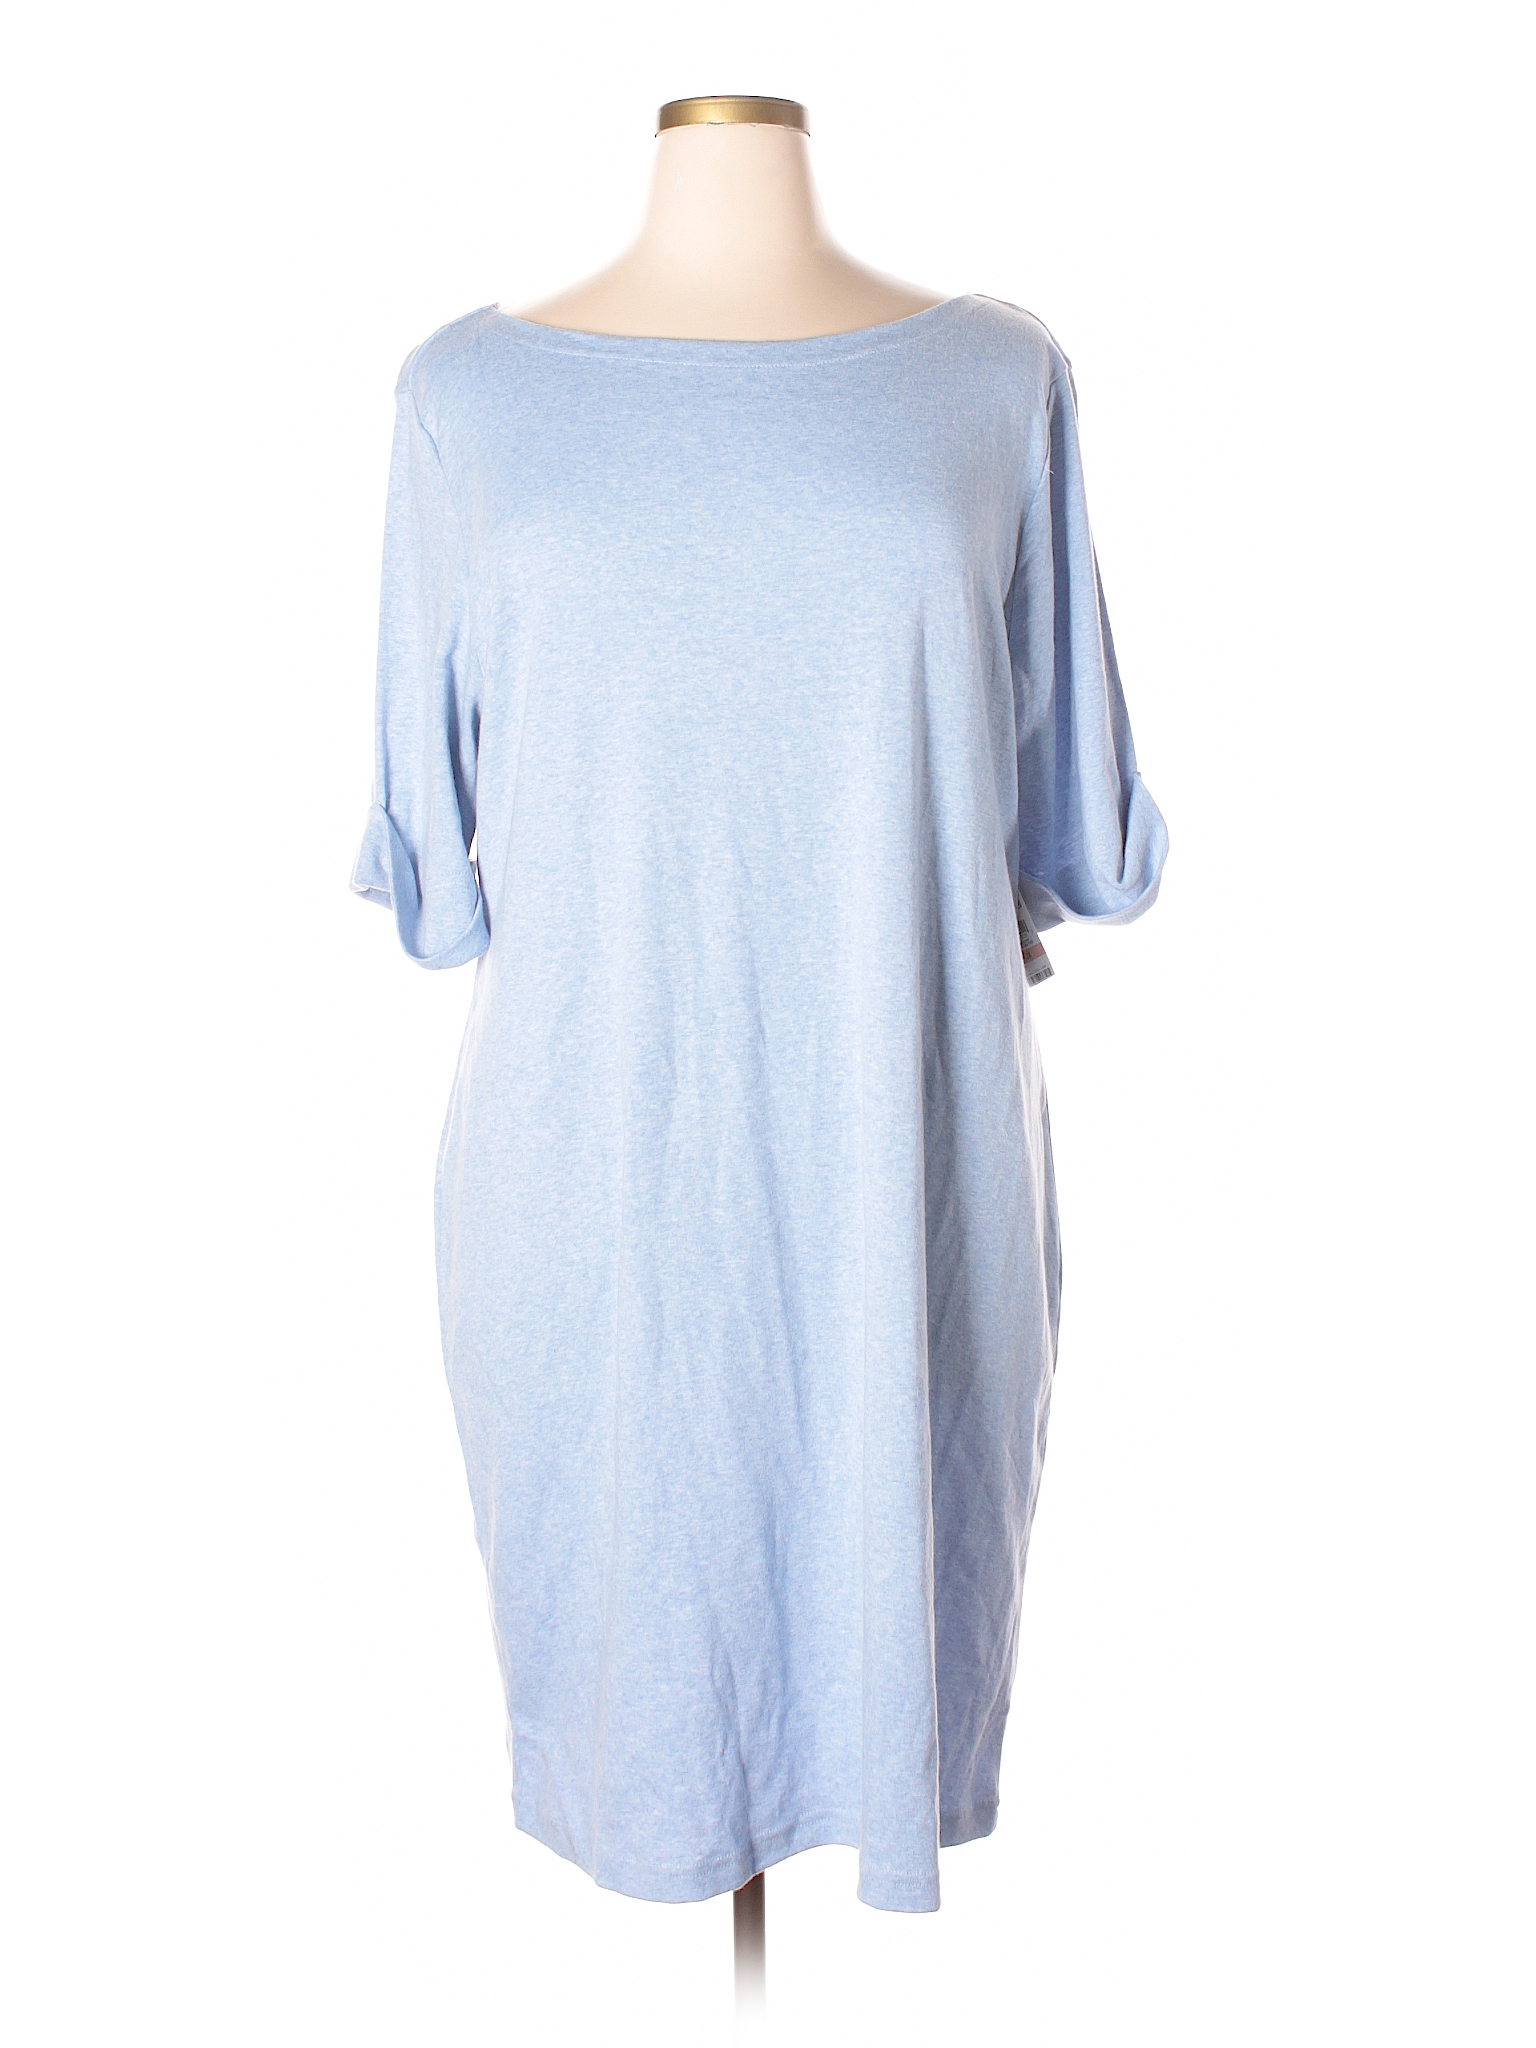 Karen Scott Sport 100% Cotton Solid Light Blue Casual Dress Size 2X ...